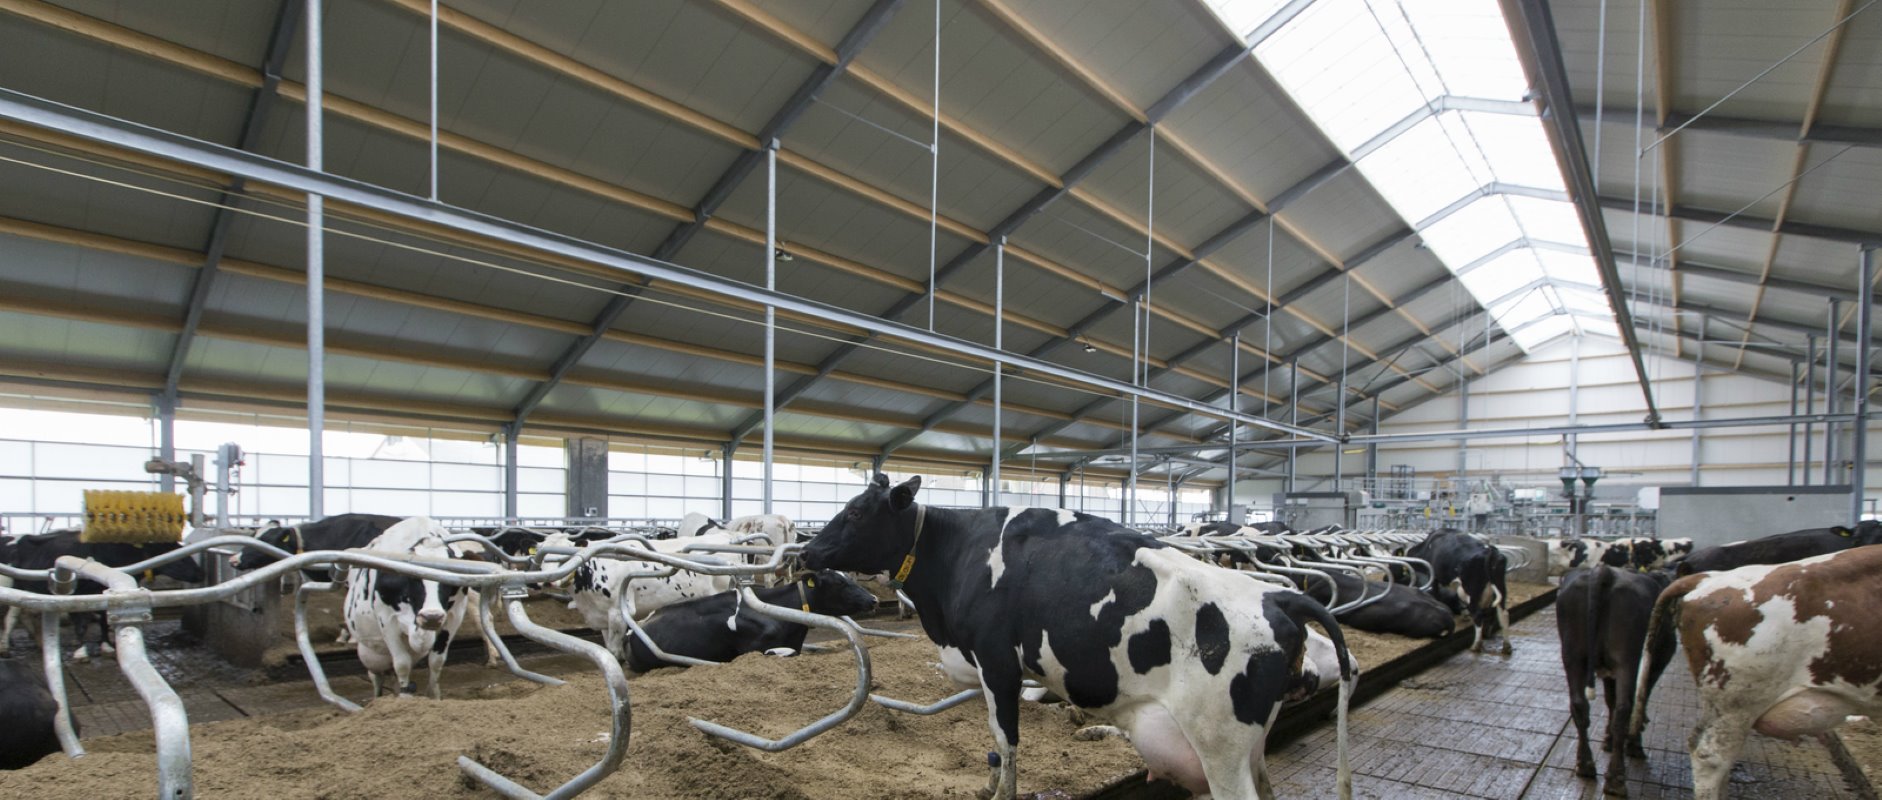 „Om de stal te kunnen betalen moeten er nog 50 koeien bij. We overwegen om die op korte termijn te kopen. We hebben 110 hectare in gebruik. Dat is een mooie basis, met genoeg voer. We willen naar 20.000 liter per hectare."